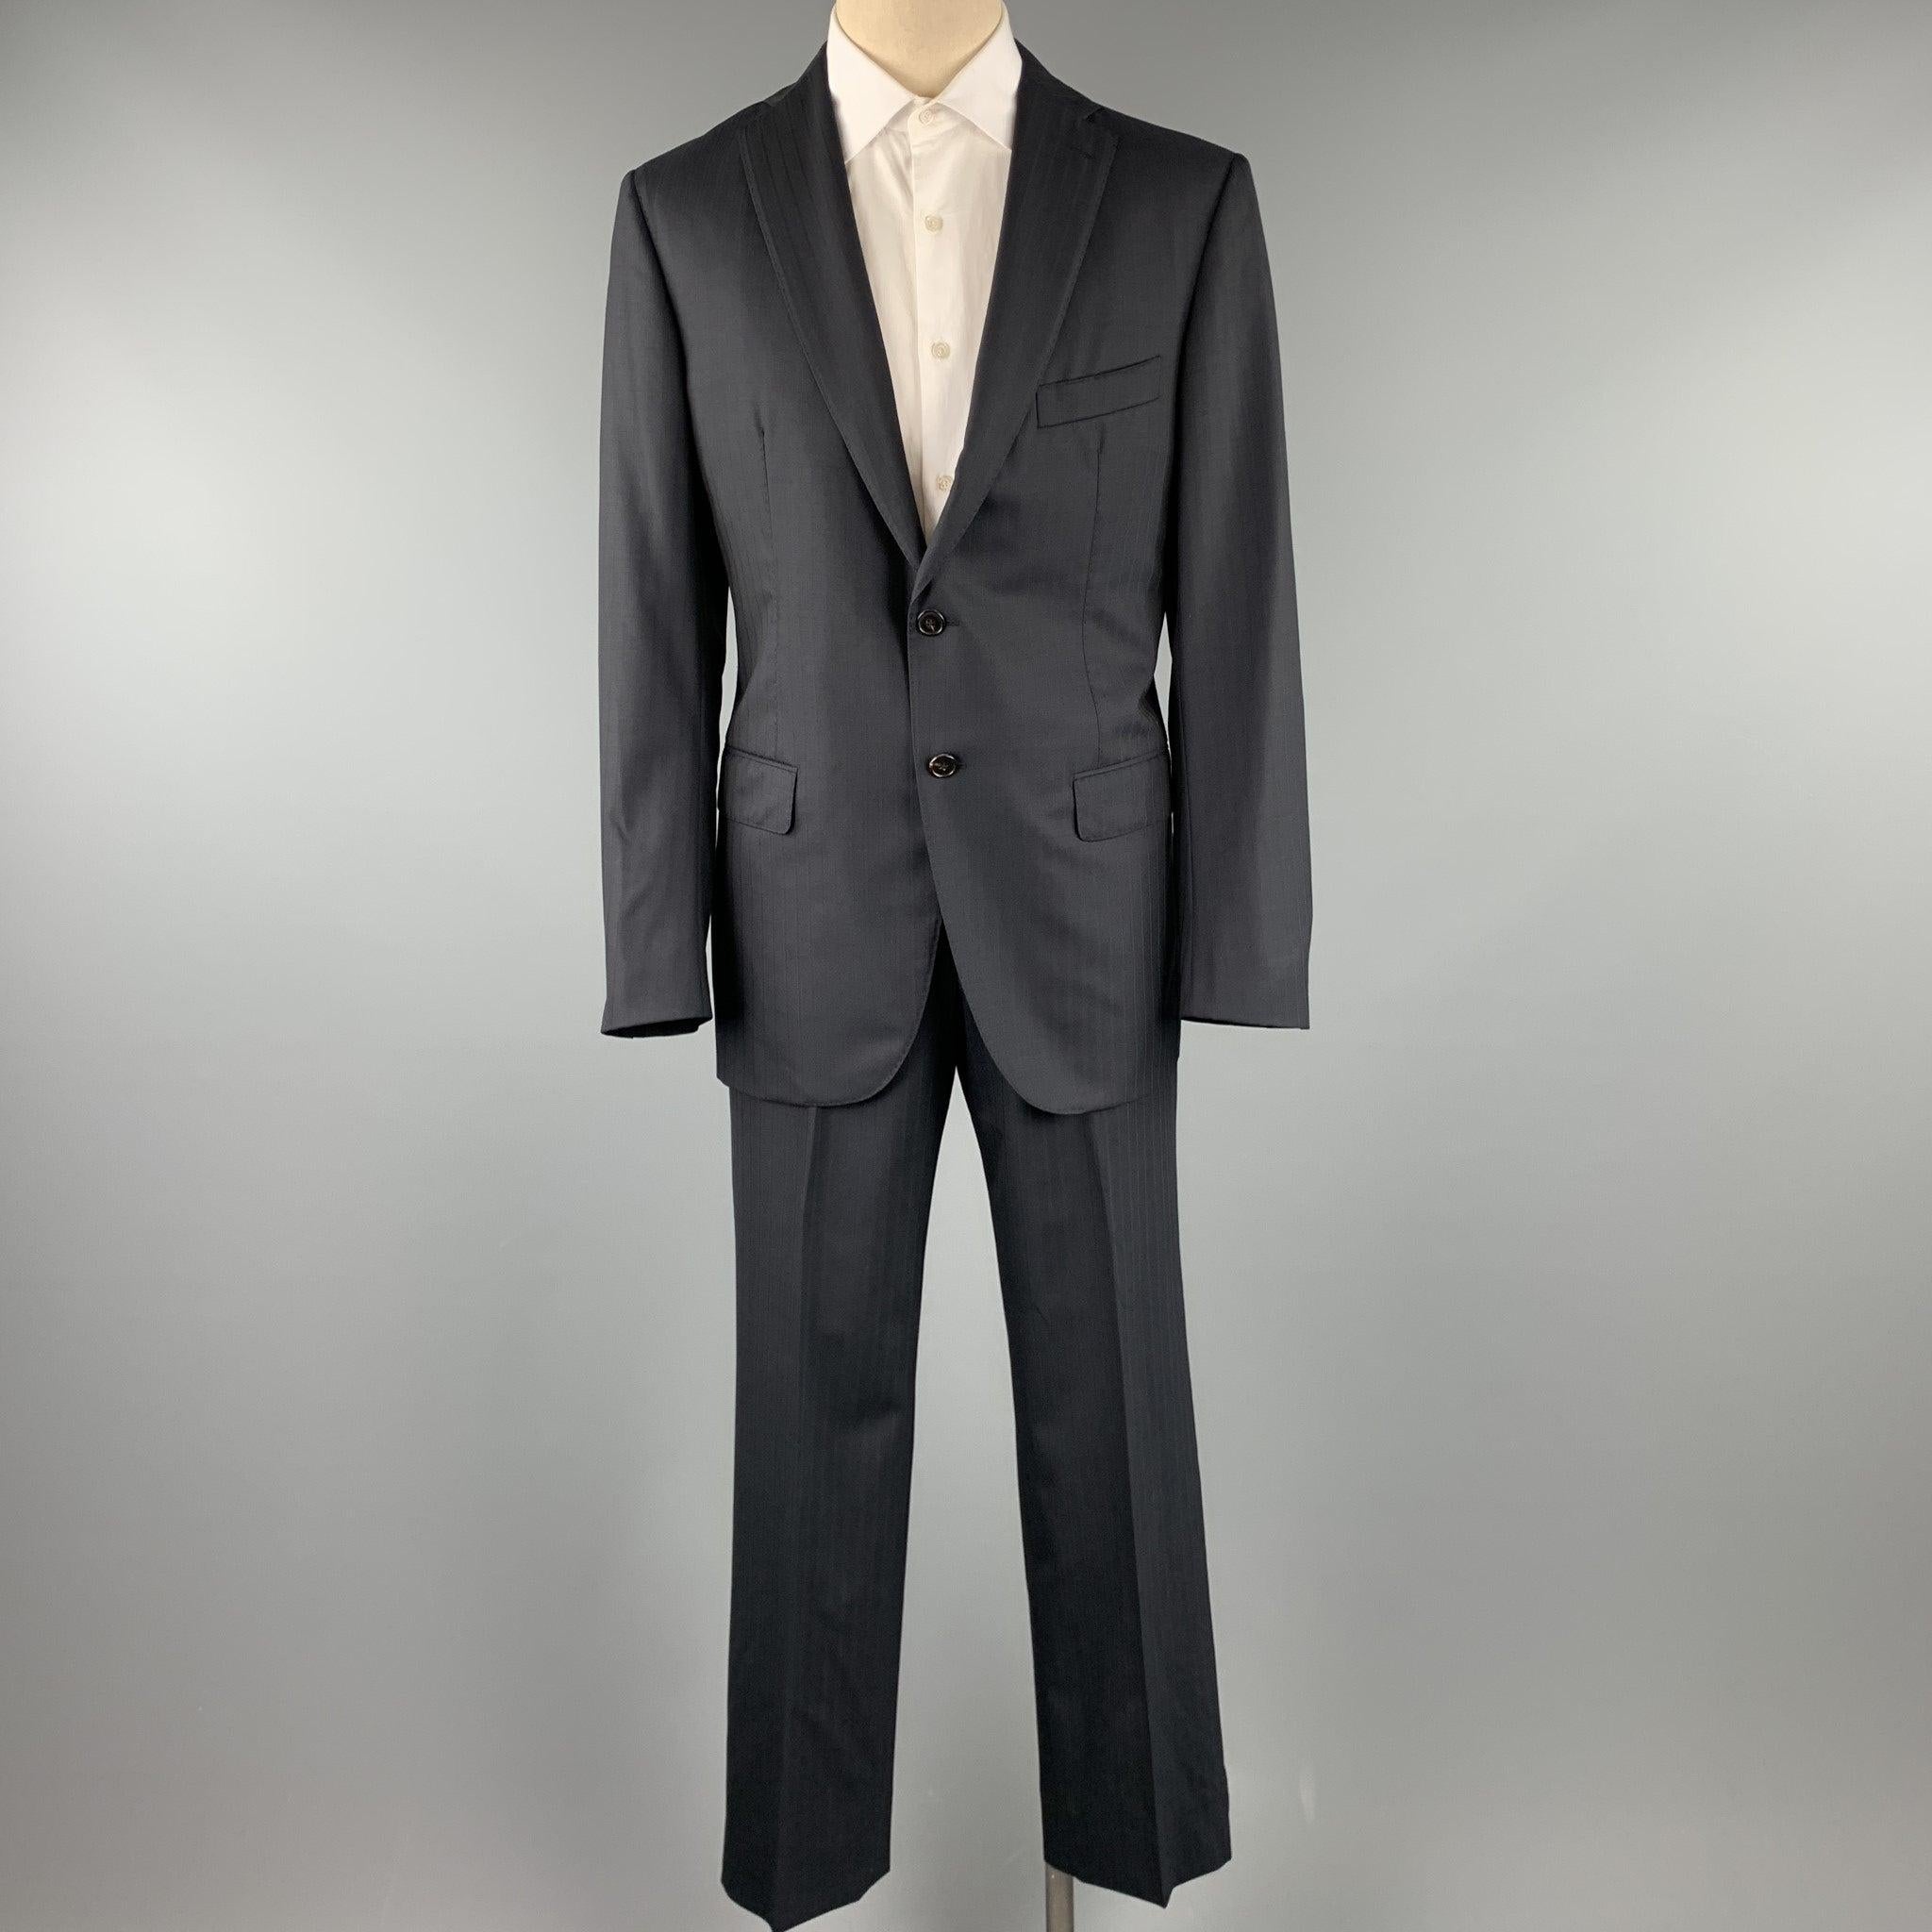 Le costume Belvest est en laine noire à rayures avec une doublure entièrement imprimée d'un monogramme. Il comprend un manteau de sport à un seul boutonnage avec revers et un pantalon assorti à devant plat. Trou d'épingle au dos de la manche. Tel